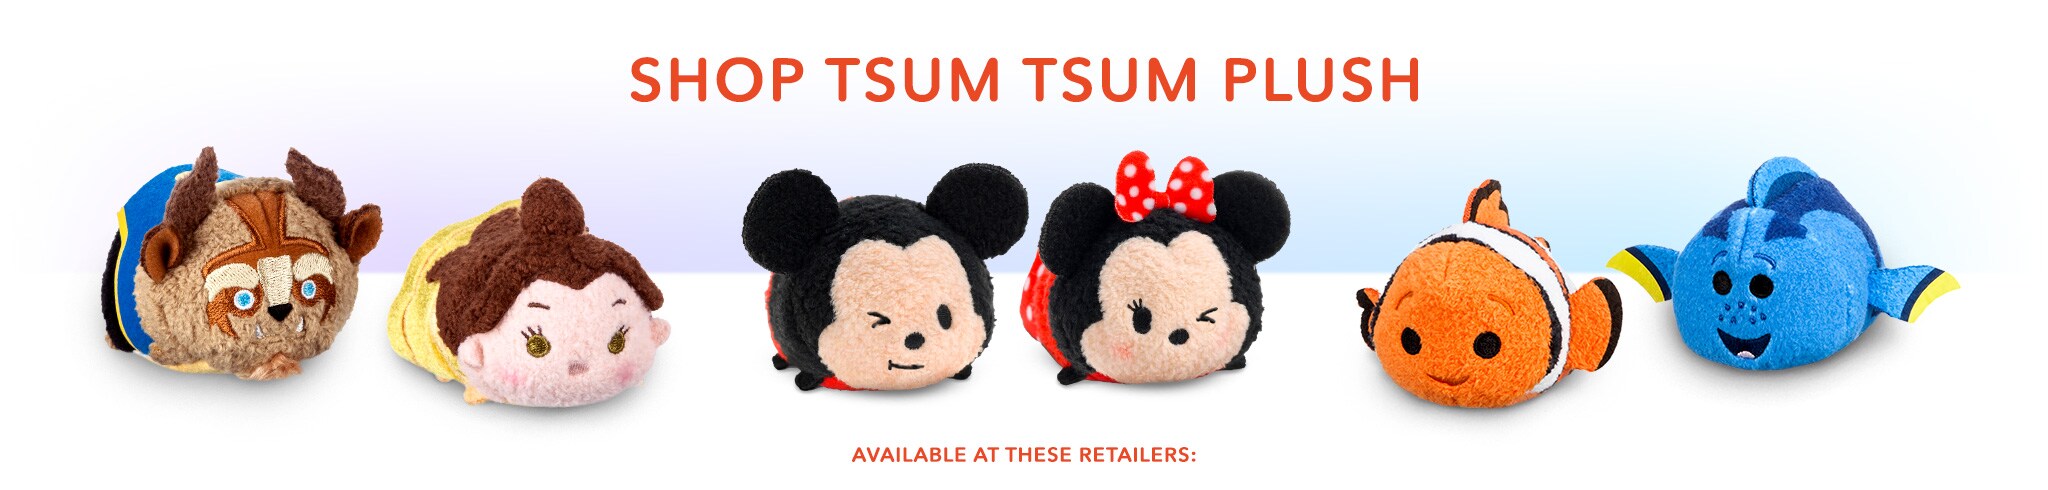 tsum tsum toys